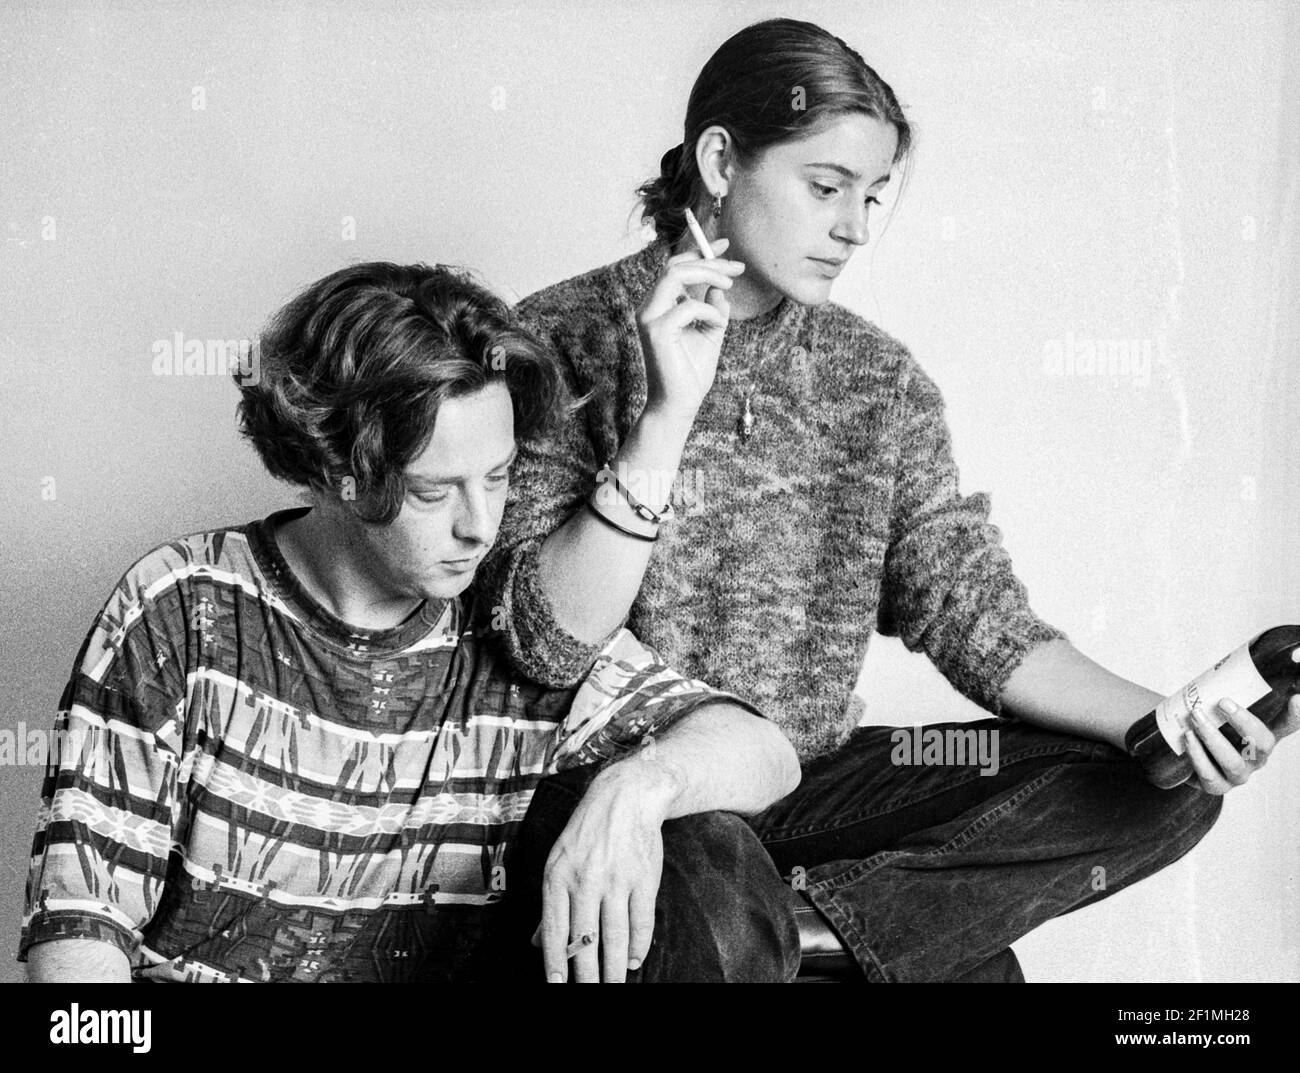 Tilburg, Niederlande. Junger Mann und junge Frau, die über eine Flasche roten Whines nachdenken, Studioportrait auf Analog Black & White Film, 1995. Stockfoto